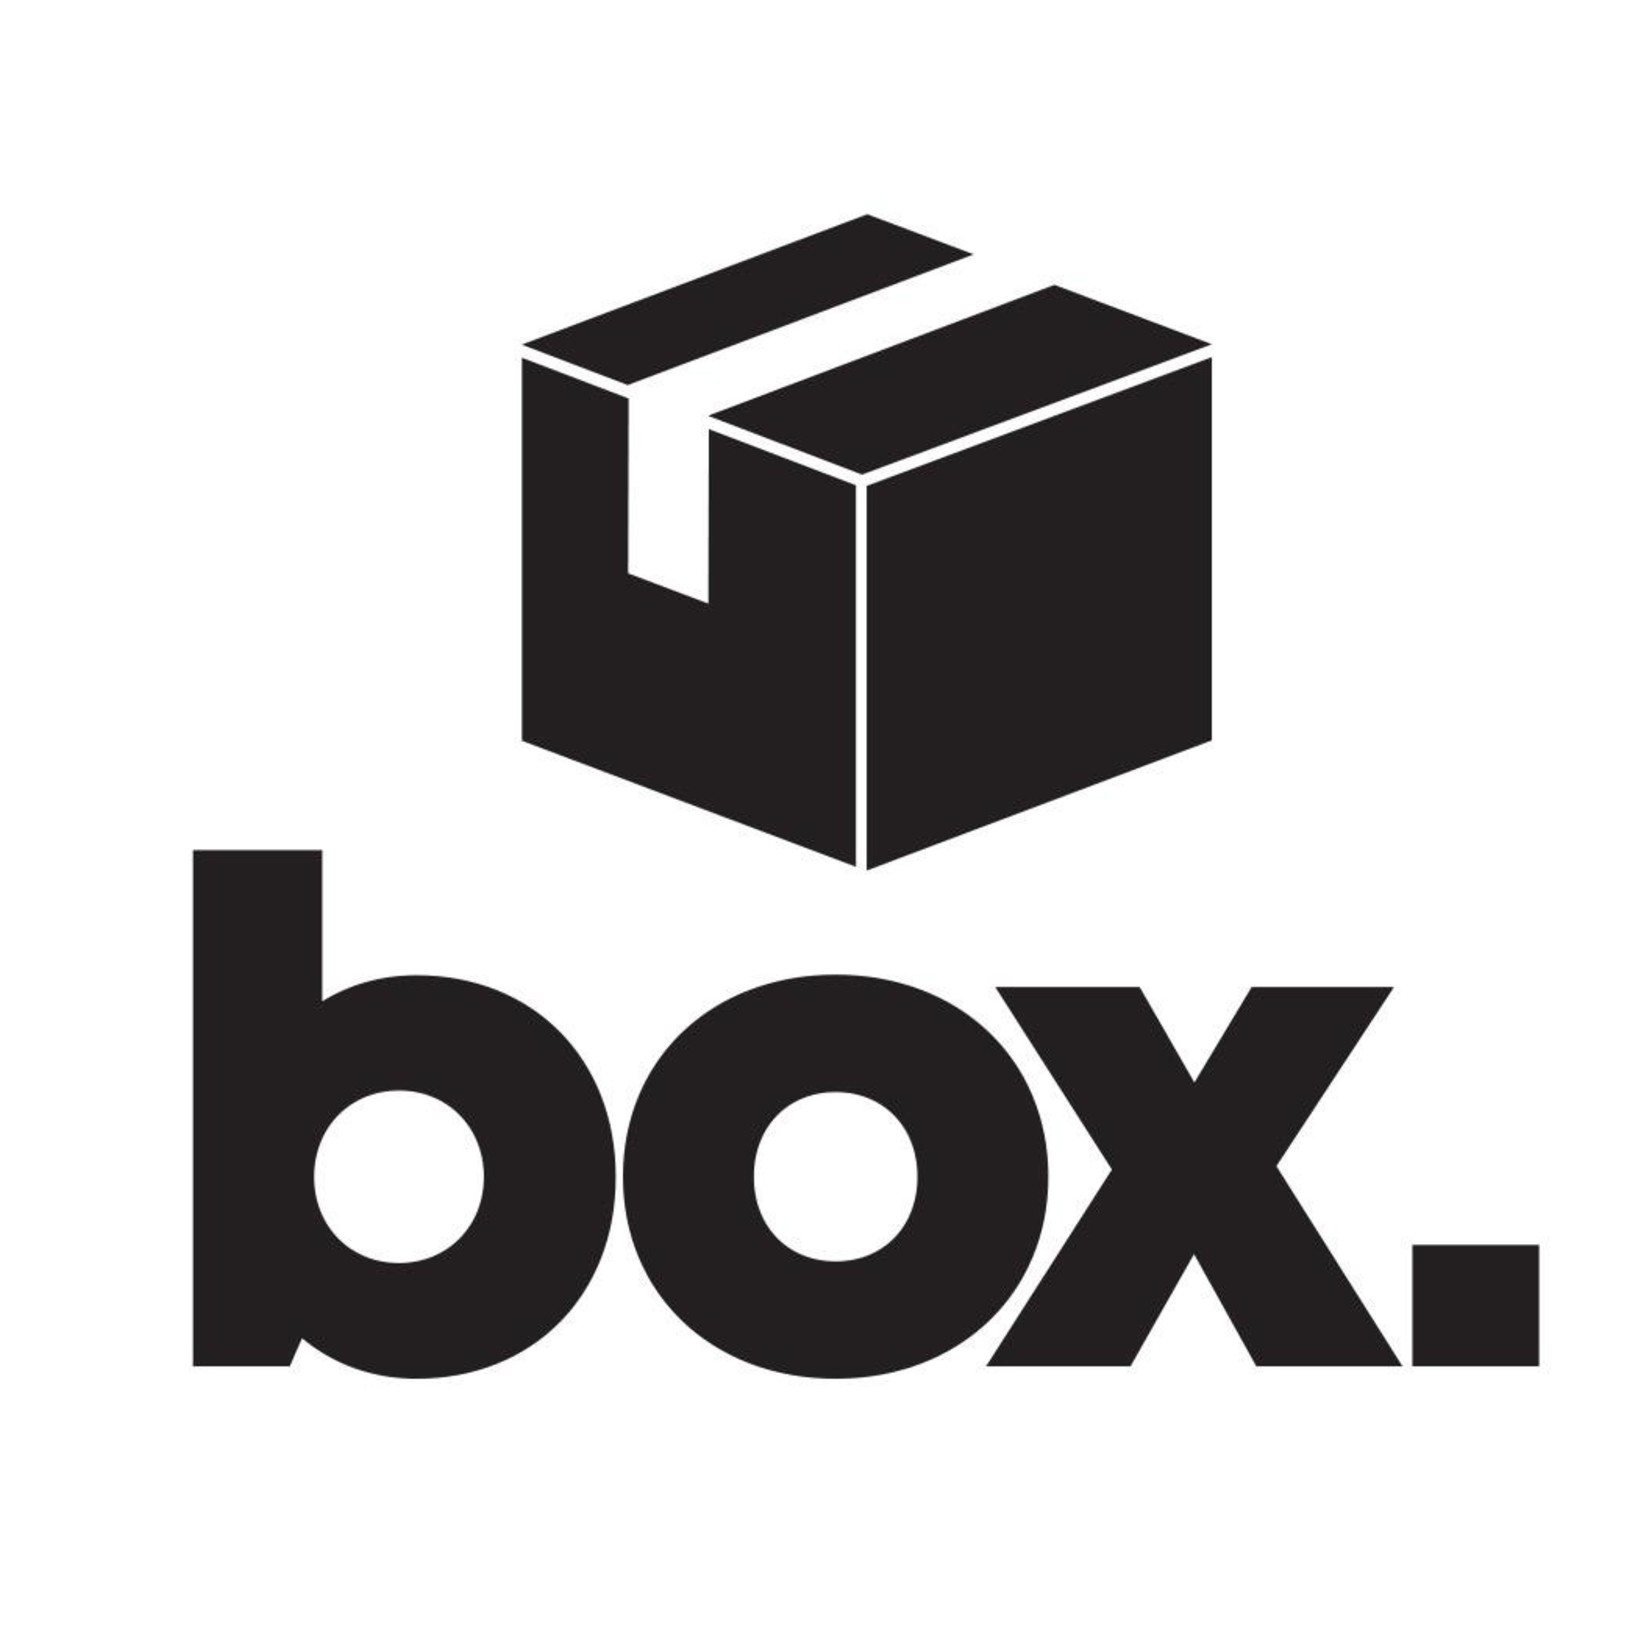 Box / Maclato